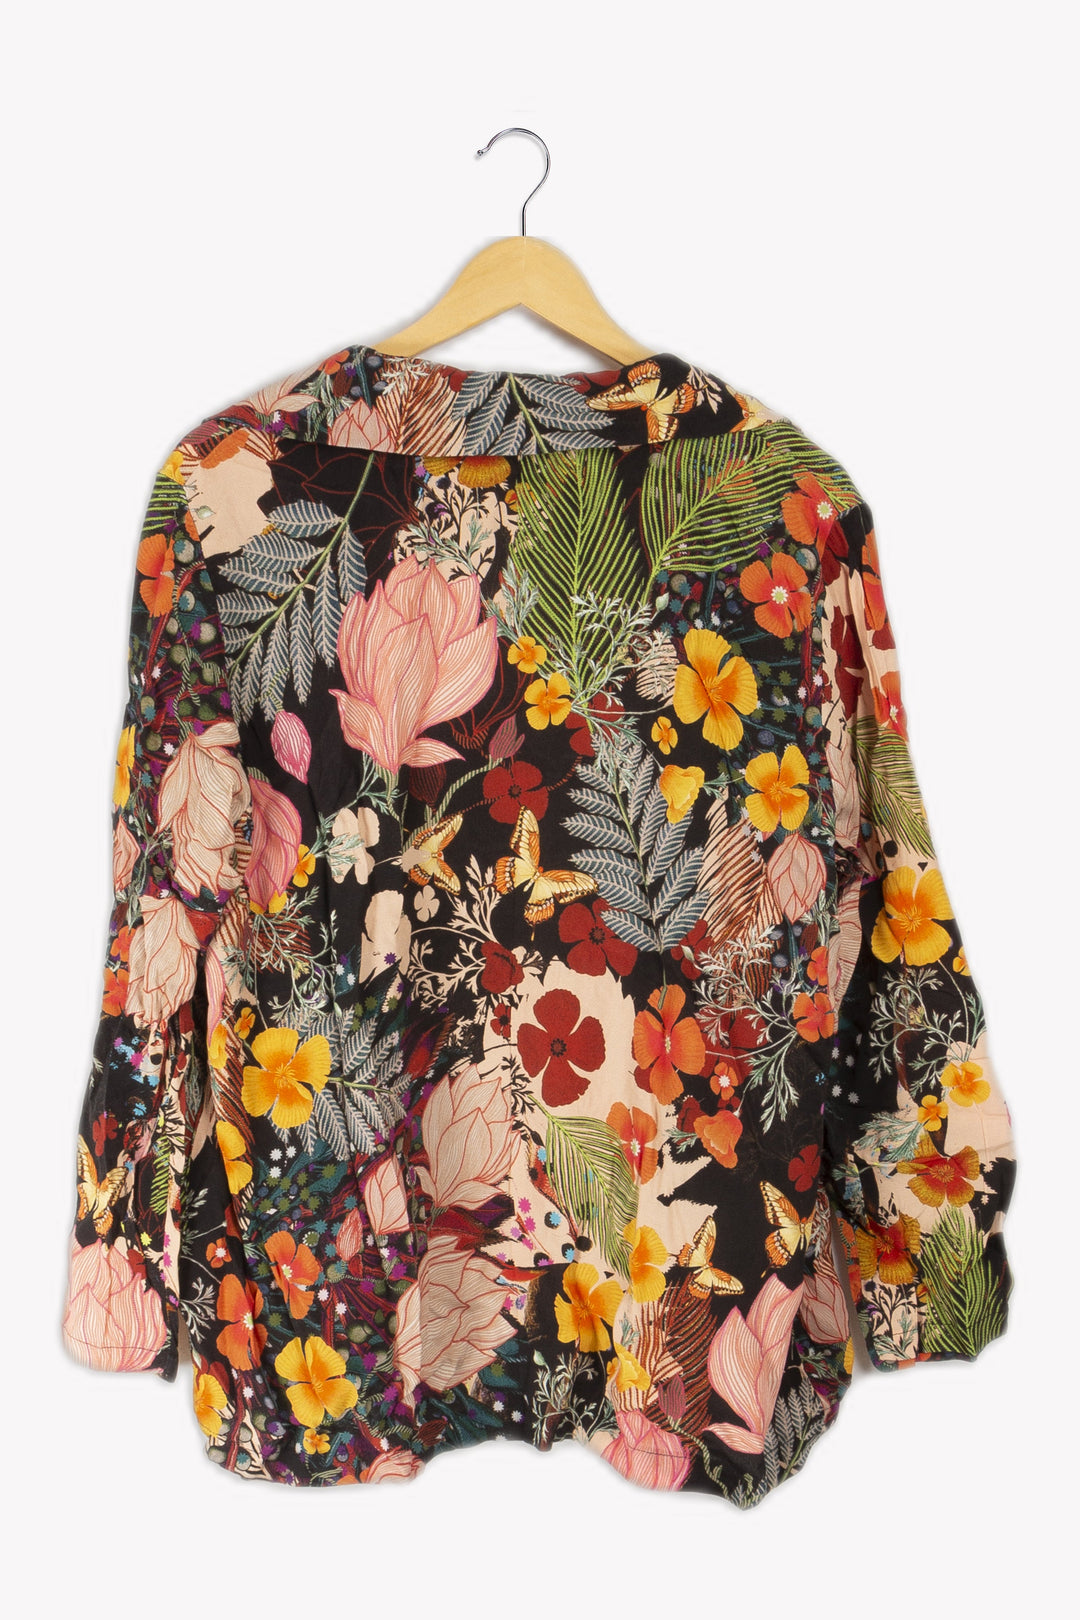 Leichte Jacke mit mehrfarbigen Blumenmustern - 44